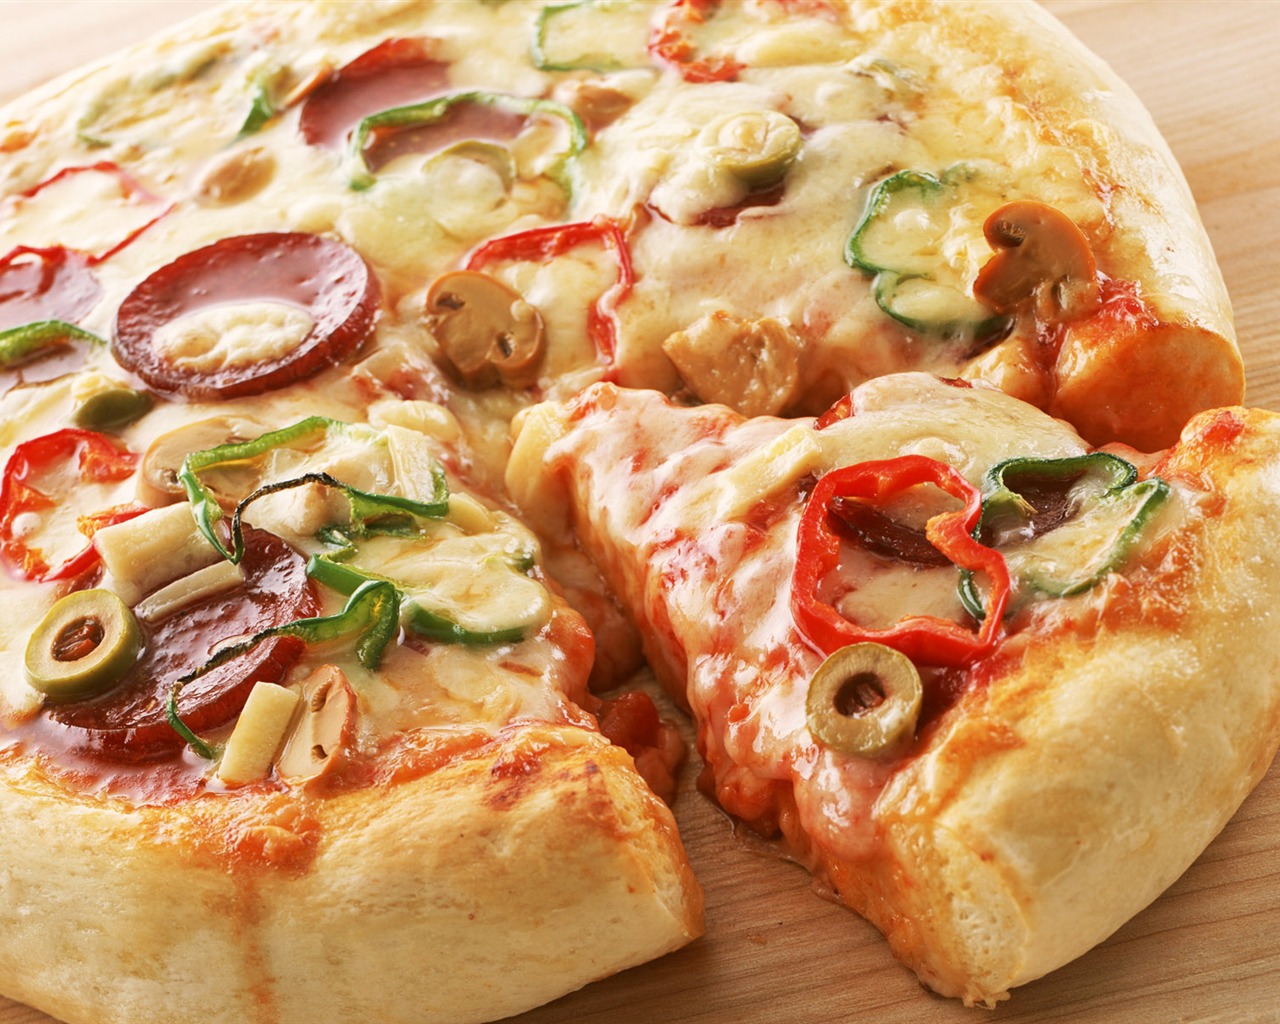 Fondos de pizzerías de Alimentos (1) #6 - 1280x1024